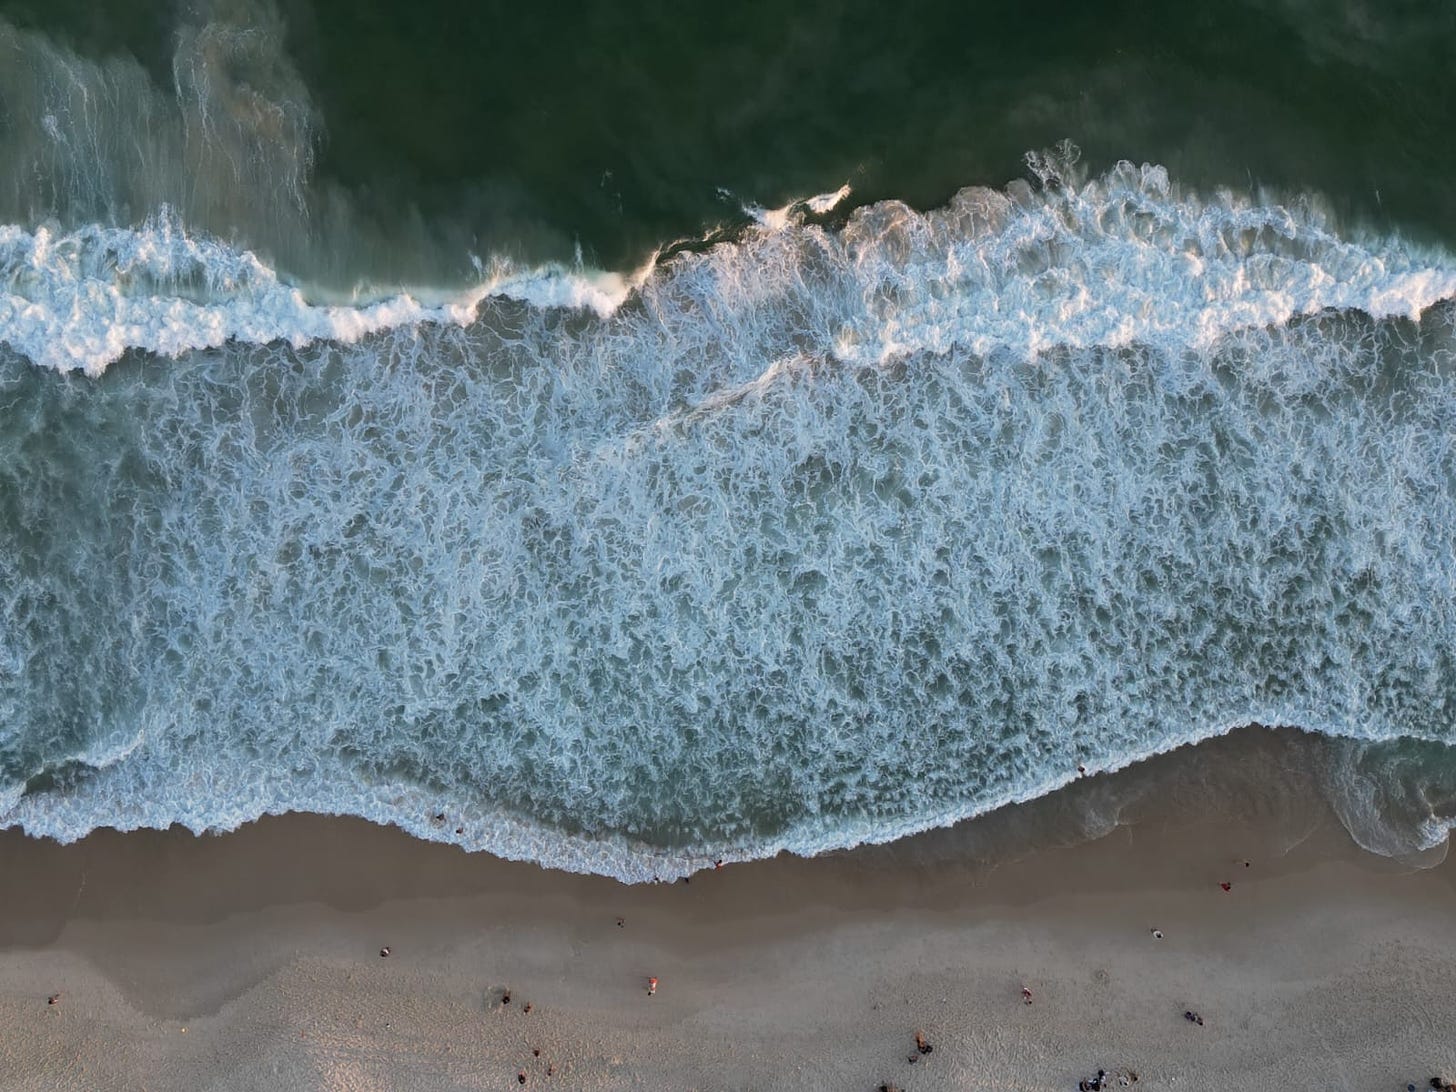 Fotografia de uma praia vista de cima - o mar, a espuma das ondas, a areia e pessoas caminando